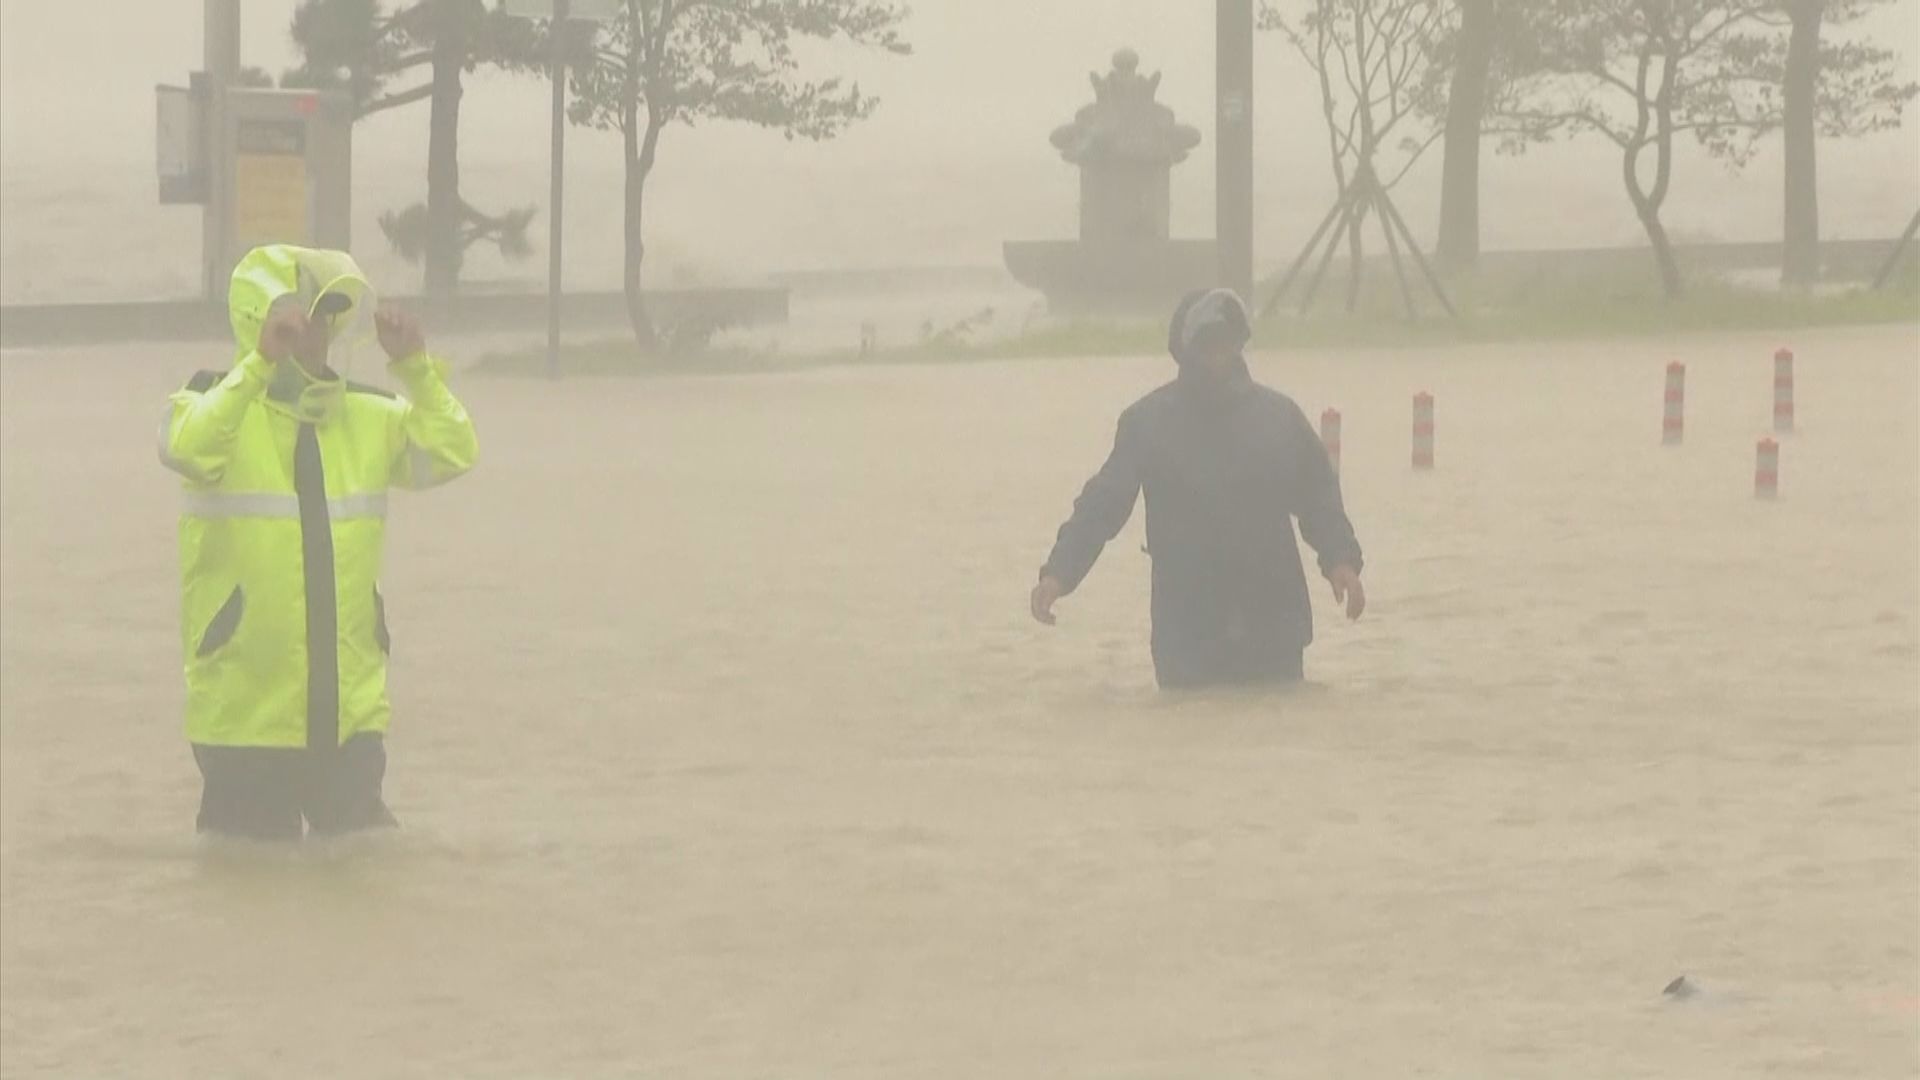 【環球薈報】專家指朝鮮半島將面對更極端氣候災害